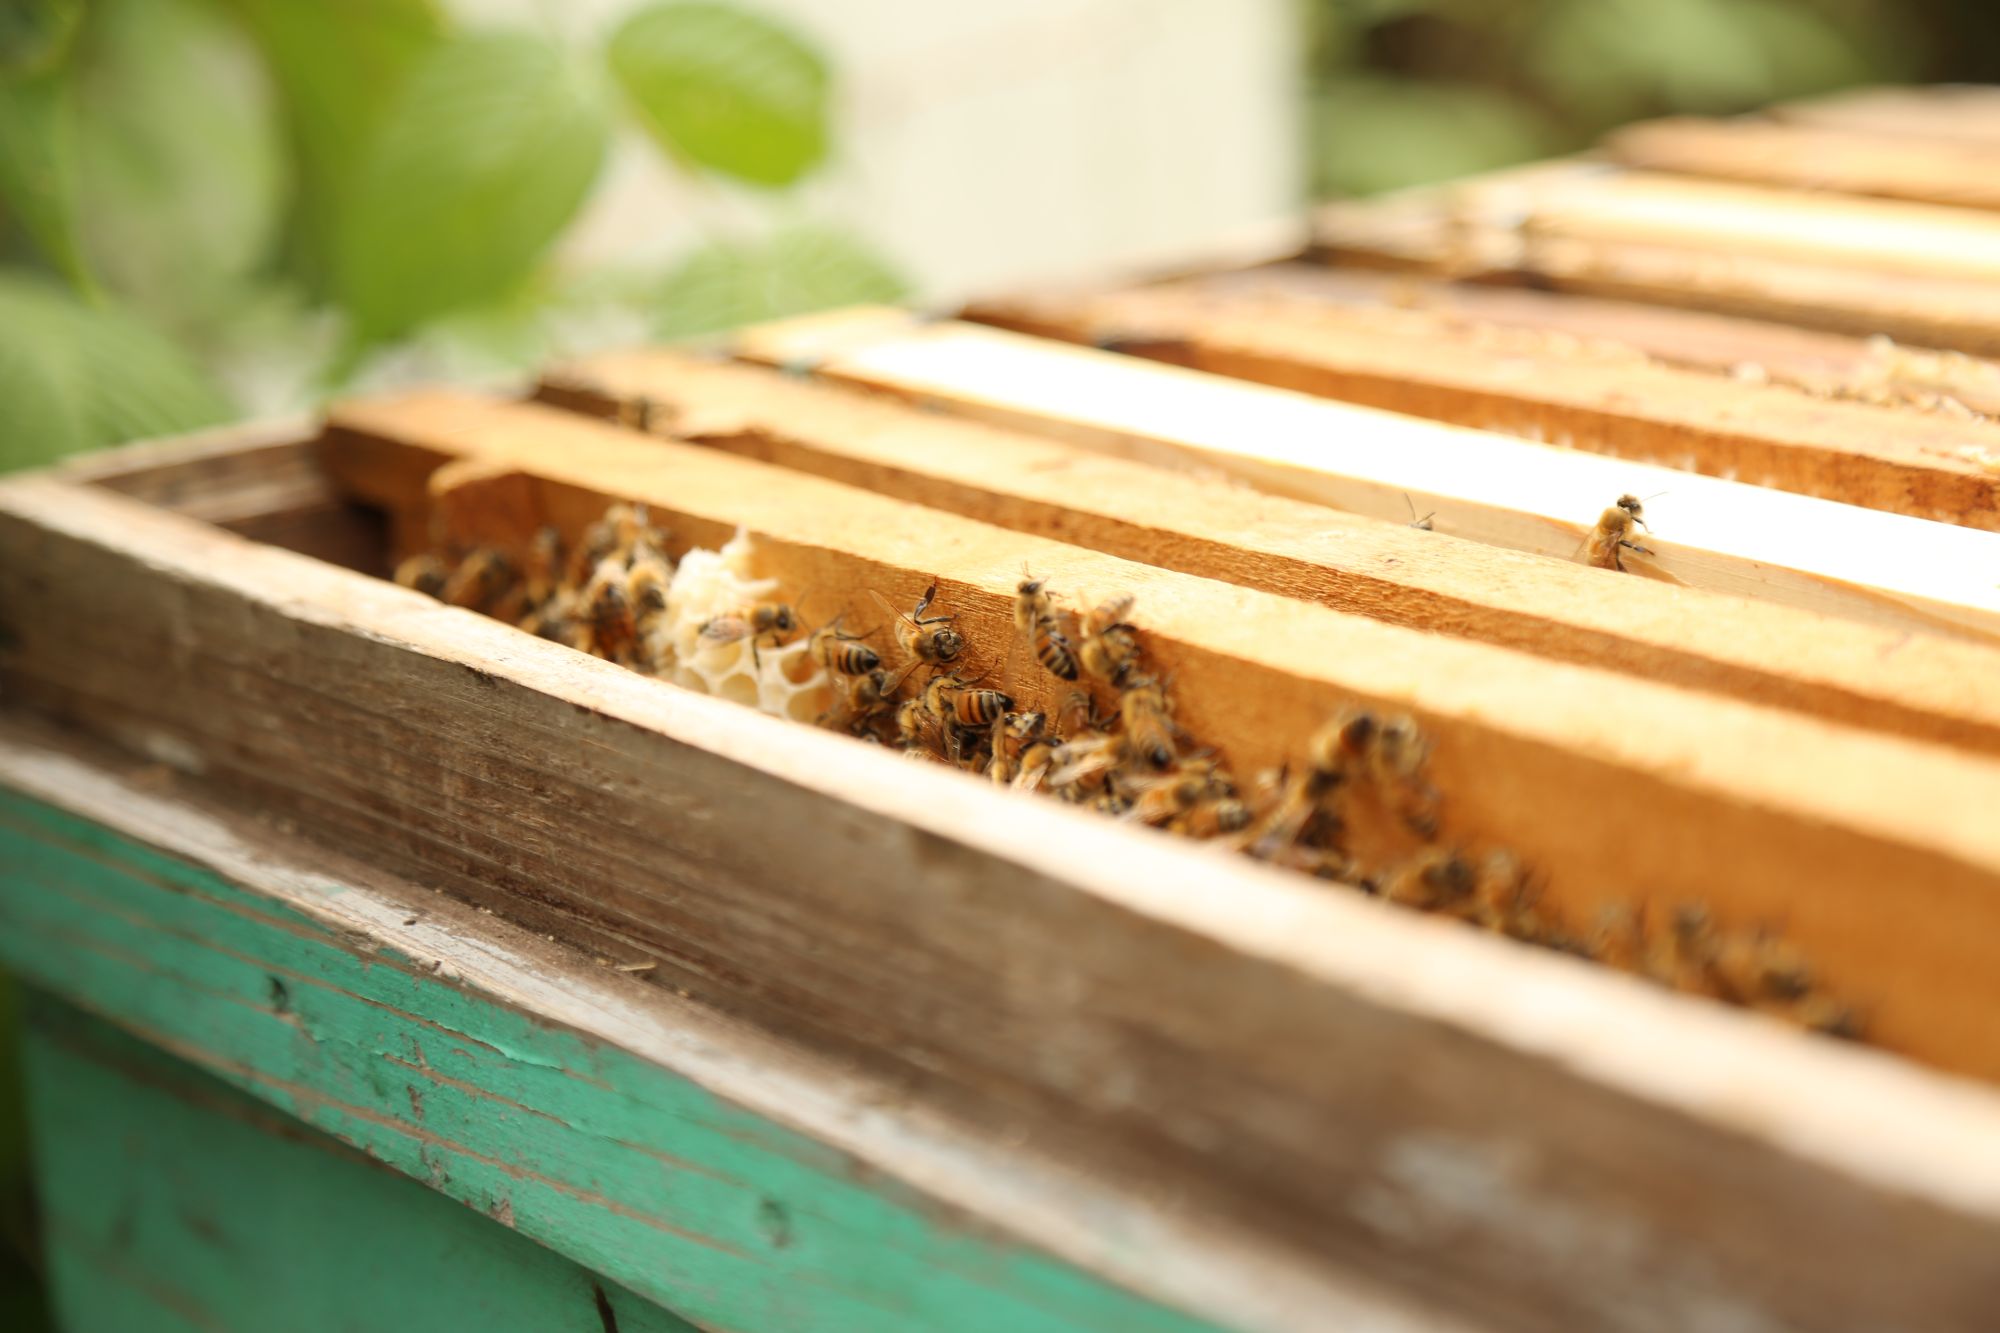 Honey Bee Apiary experience